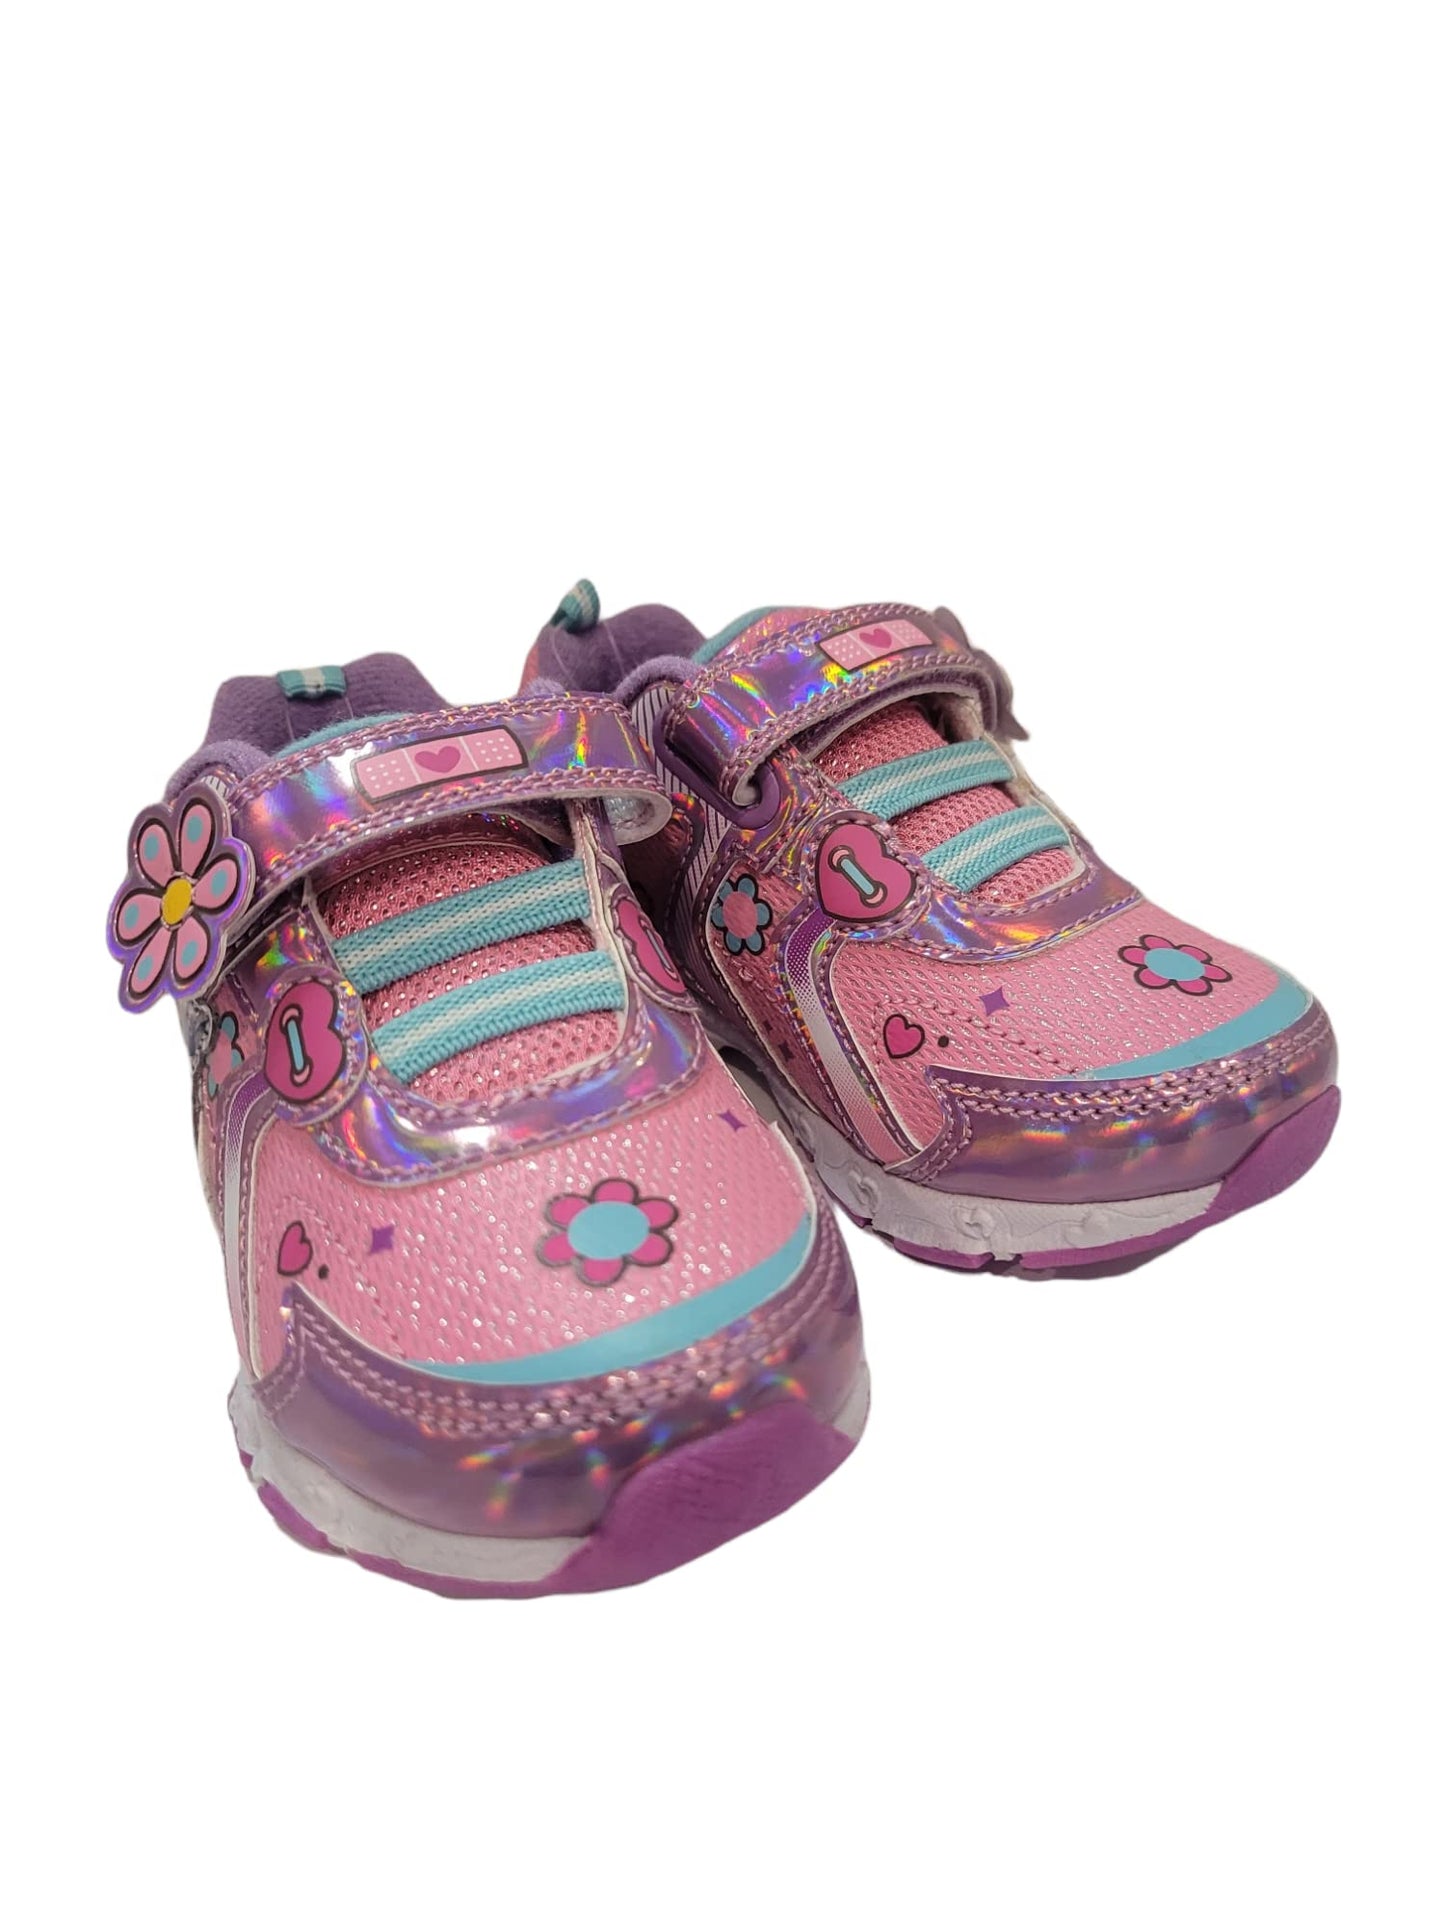 Disney Doc McStuffins Girl's Lighted Athletic Sneaker (Toddler/Little Kid)